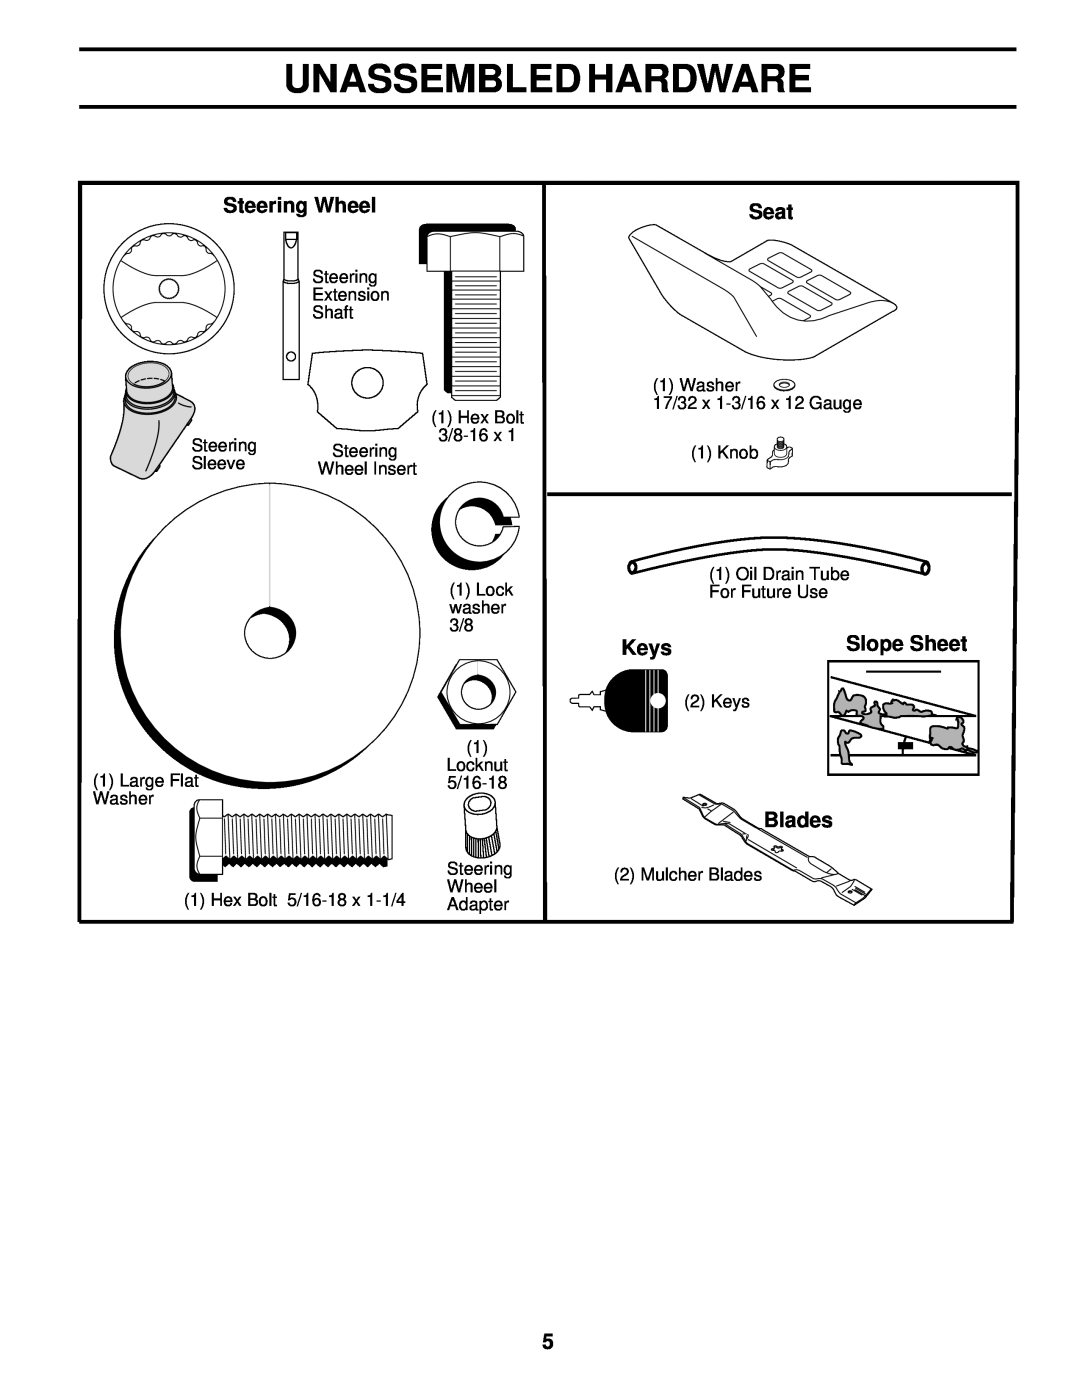 Poulan PR18542STC owner manual Unassembled Hardware, Steering Wheel, Seat, Keys, Slope Sheet, Blades 